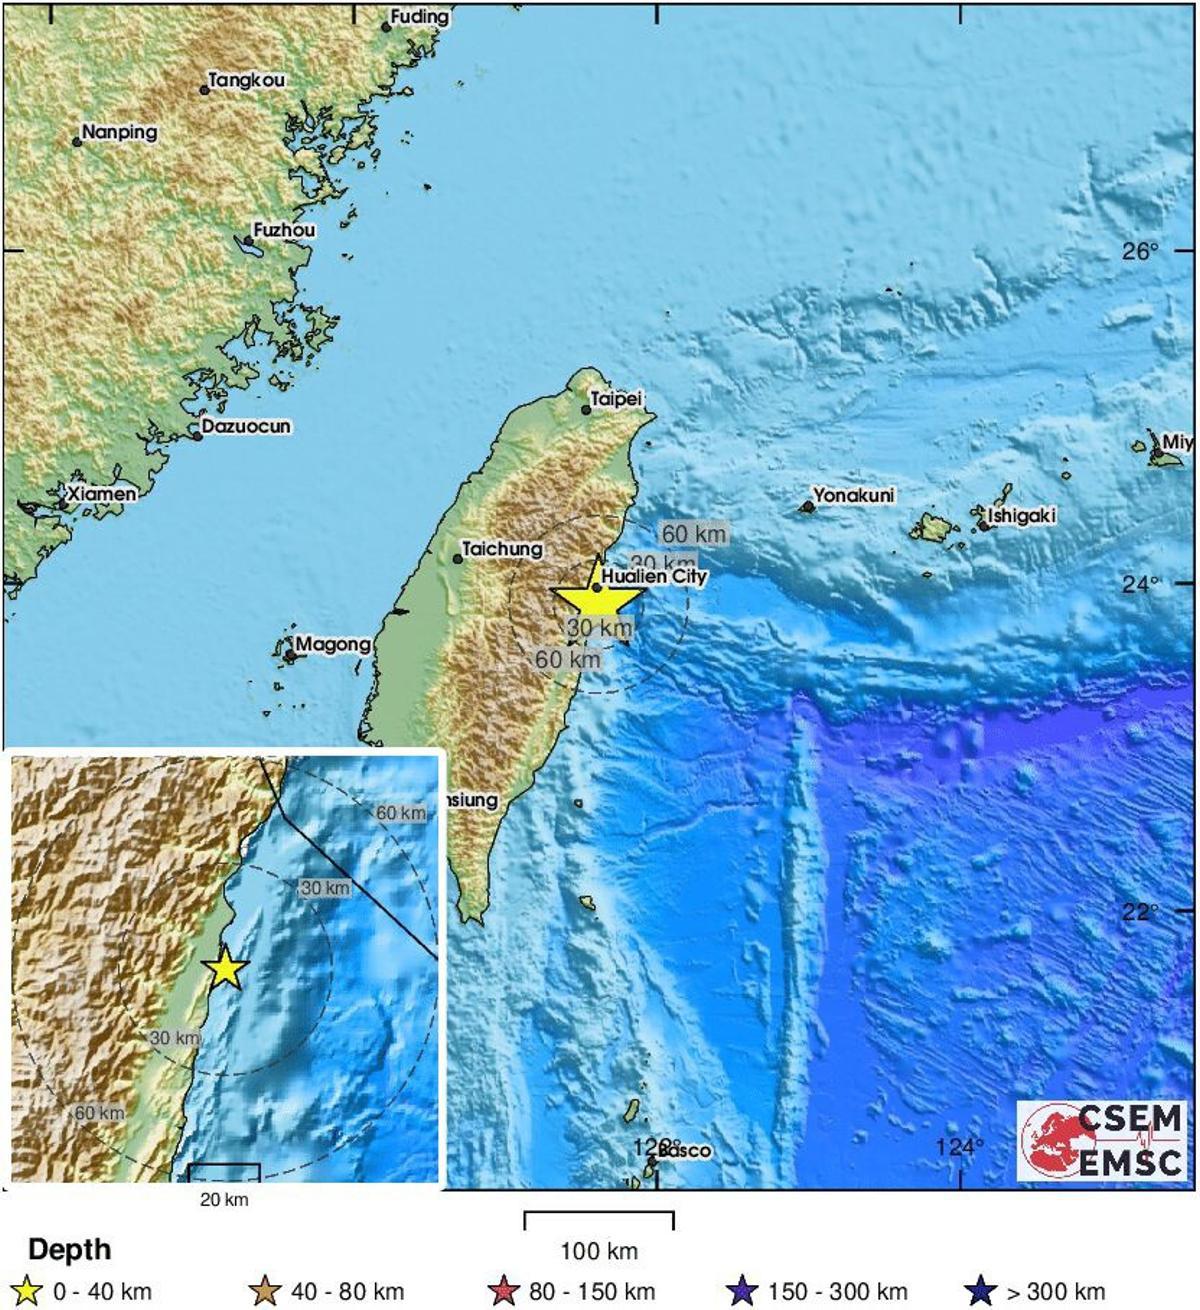 Un terratrèmol de 7,4 graus i un altre de 6,2 sacsegen l'illa de Taiwan i provoquen una alerta de tsunami a Japó